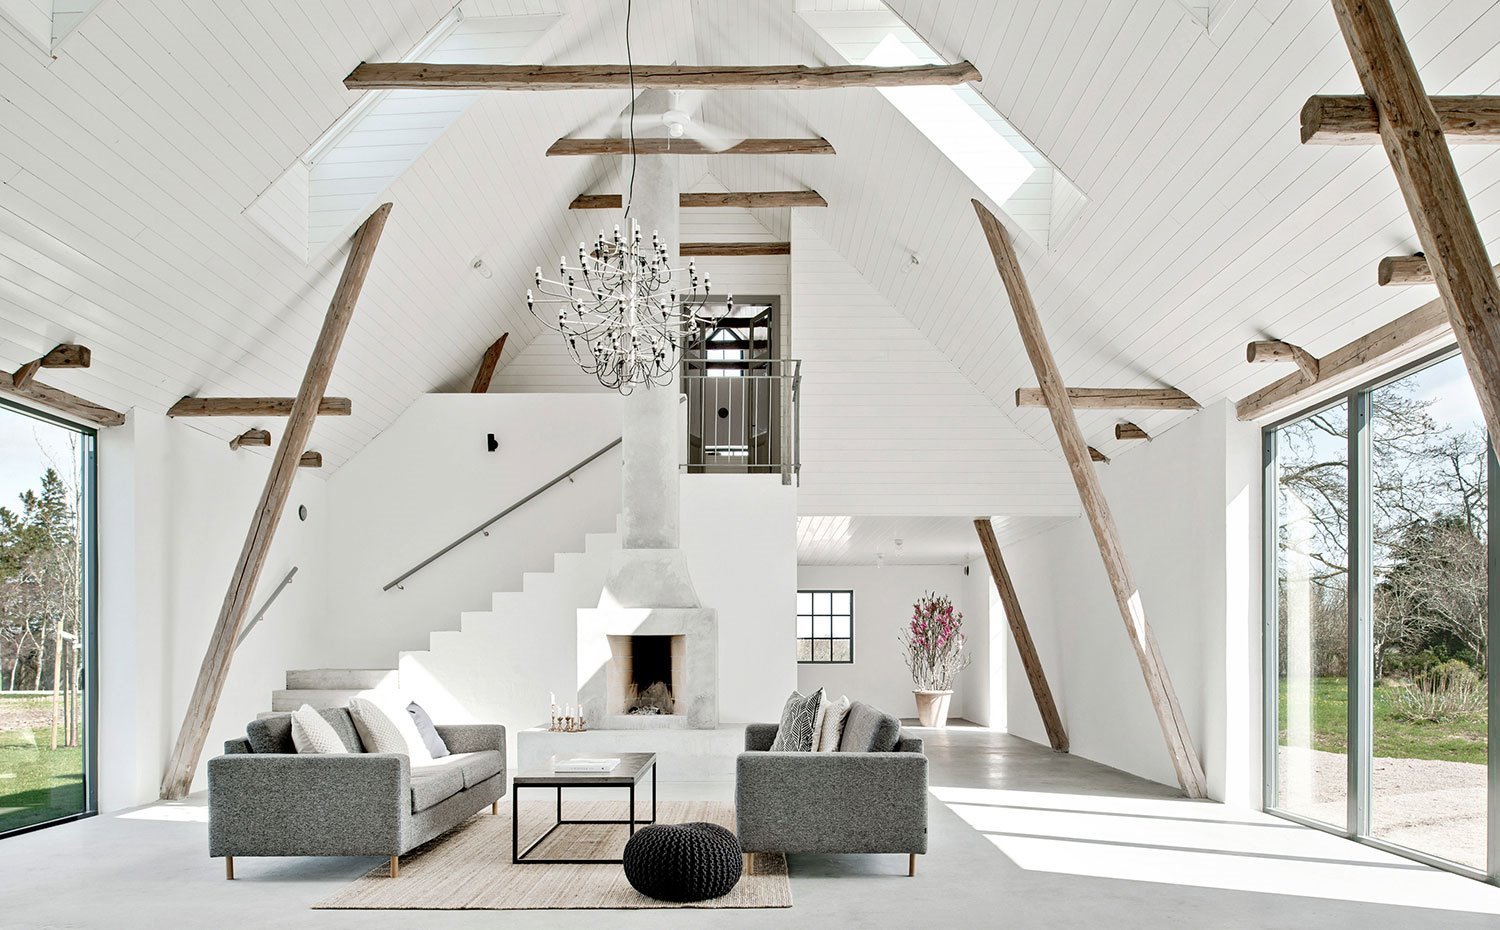 vista-salon-con-sofas-en-gris-techos-de-madera-en-blanco-y-vigas-al-natural 0e347877 1500x930